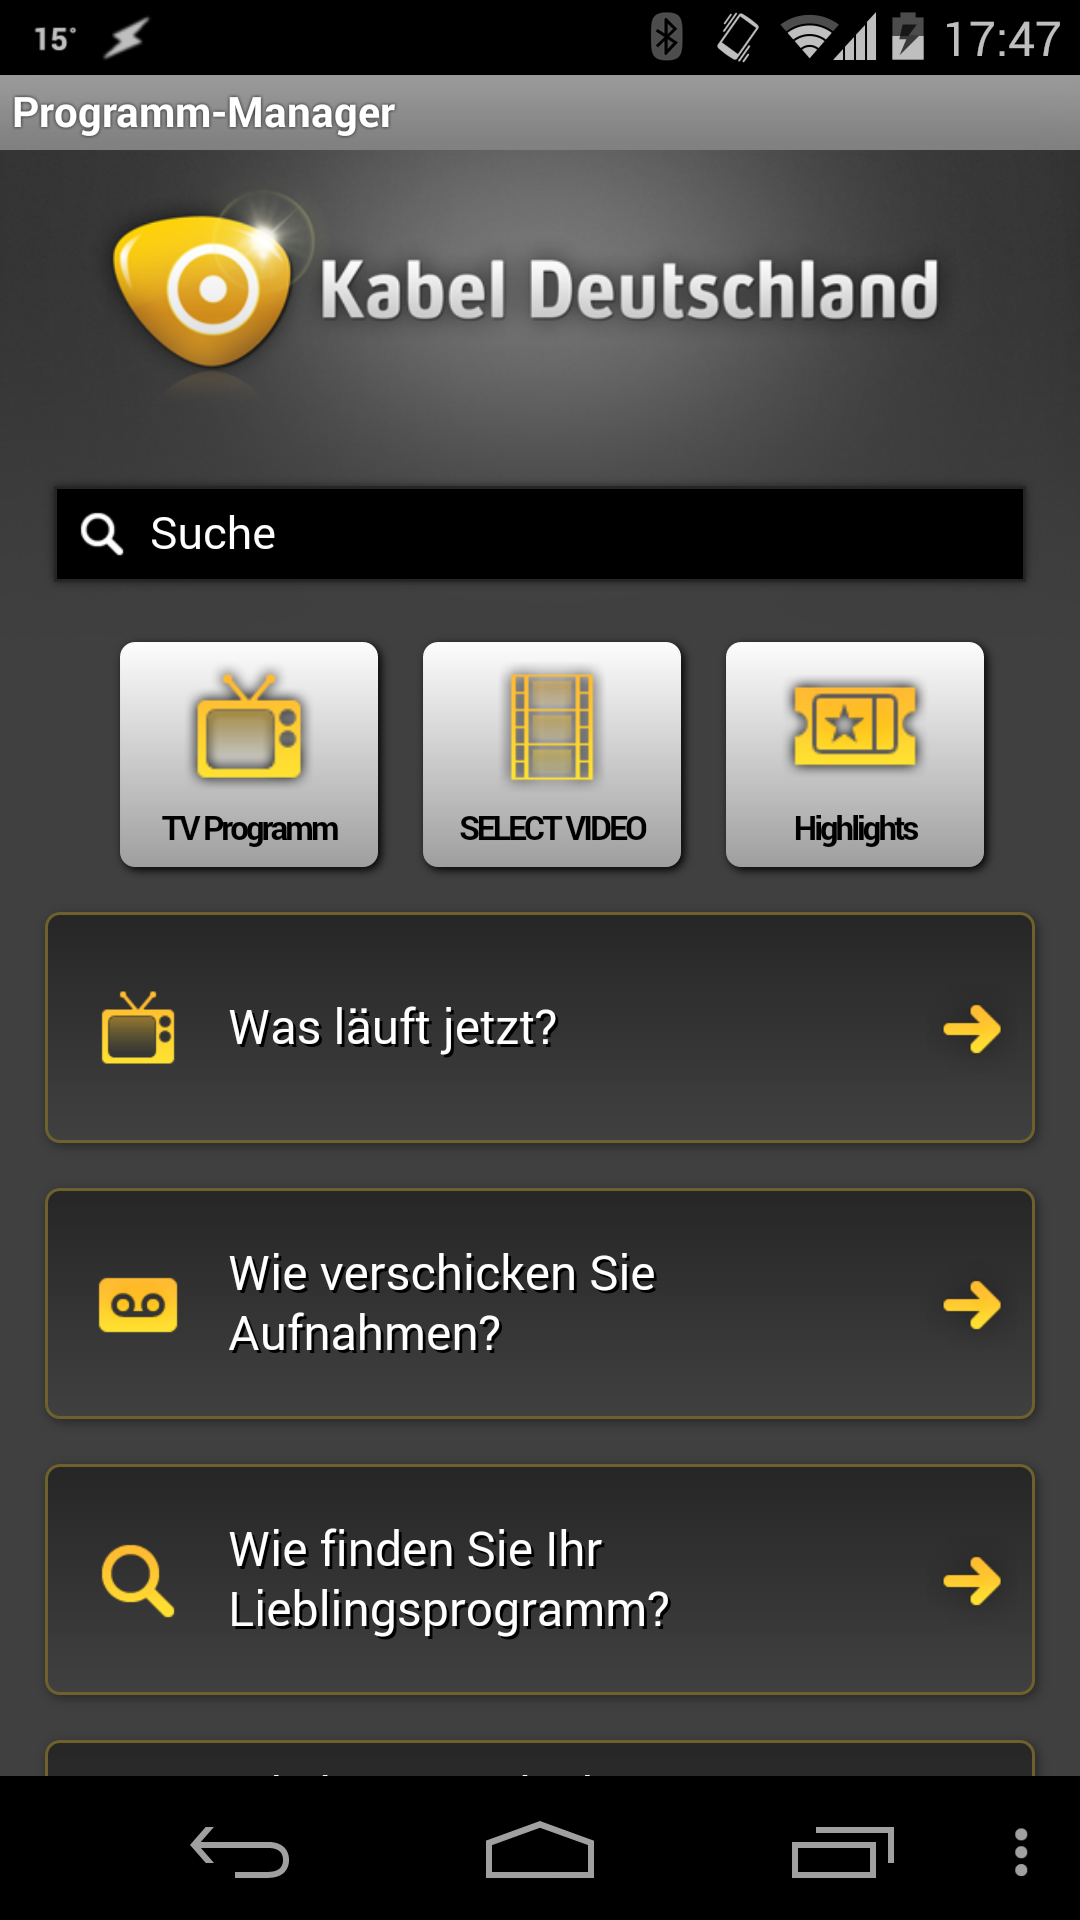 App von Kabel Deutschland mit Datenleck | heise online